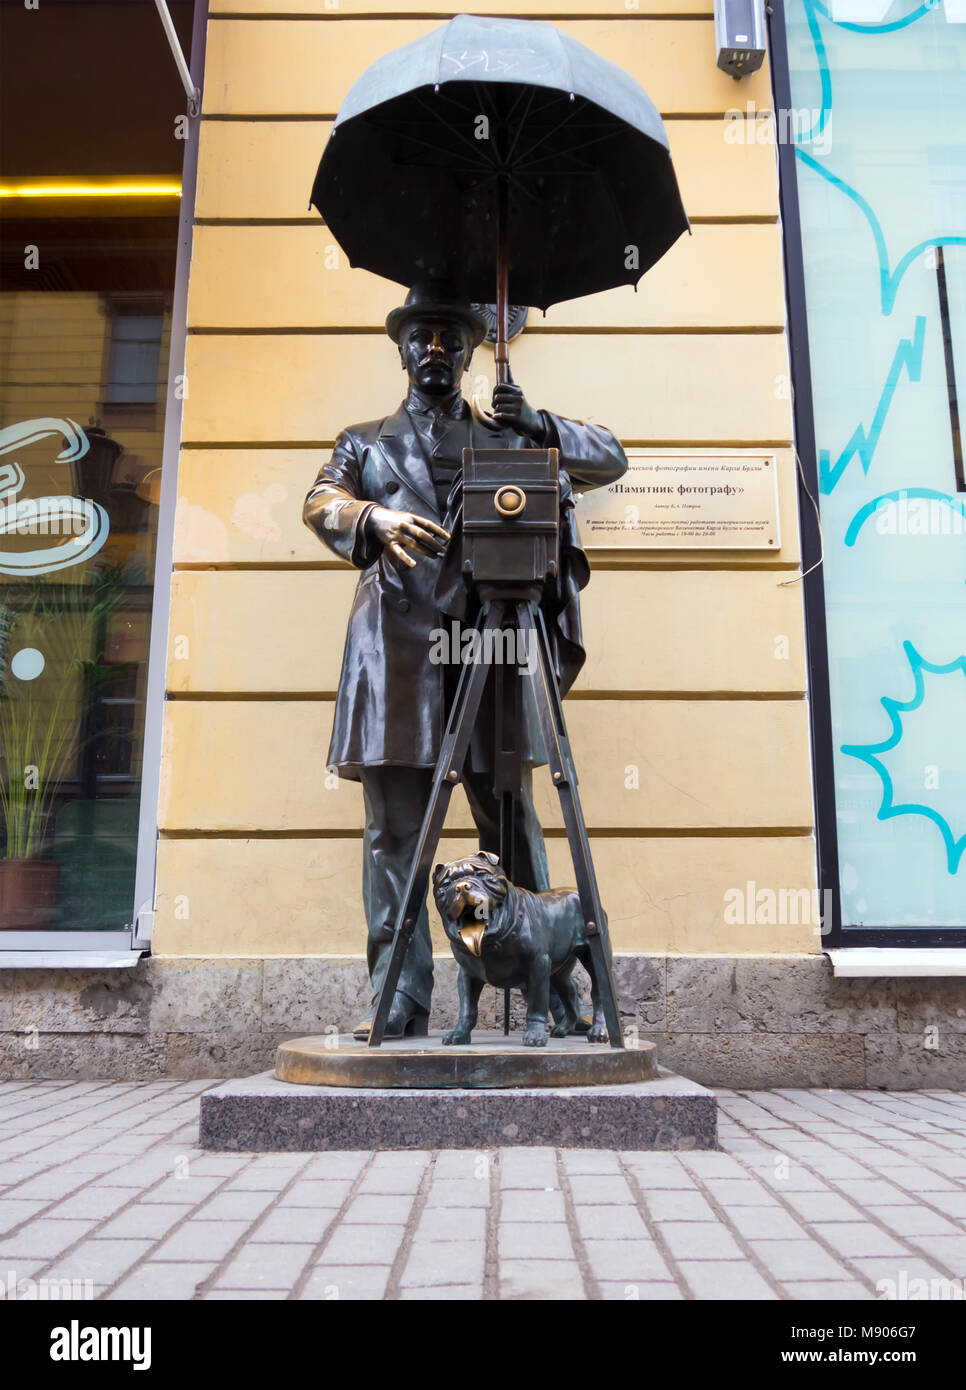 Saint-pétersbourg, Russie - 13 Février 2016 : Monument au photographe on Malaya Sadovaya street de la ville de Saint-Pétersbourg Banque D'Images